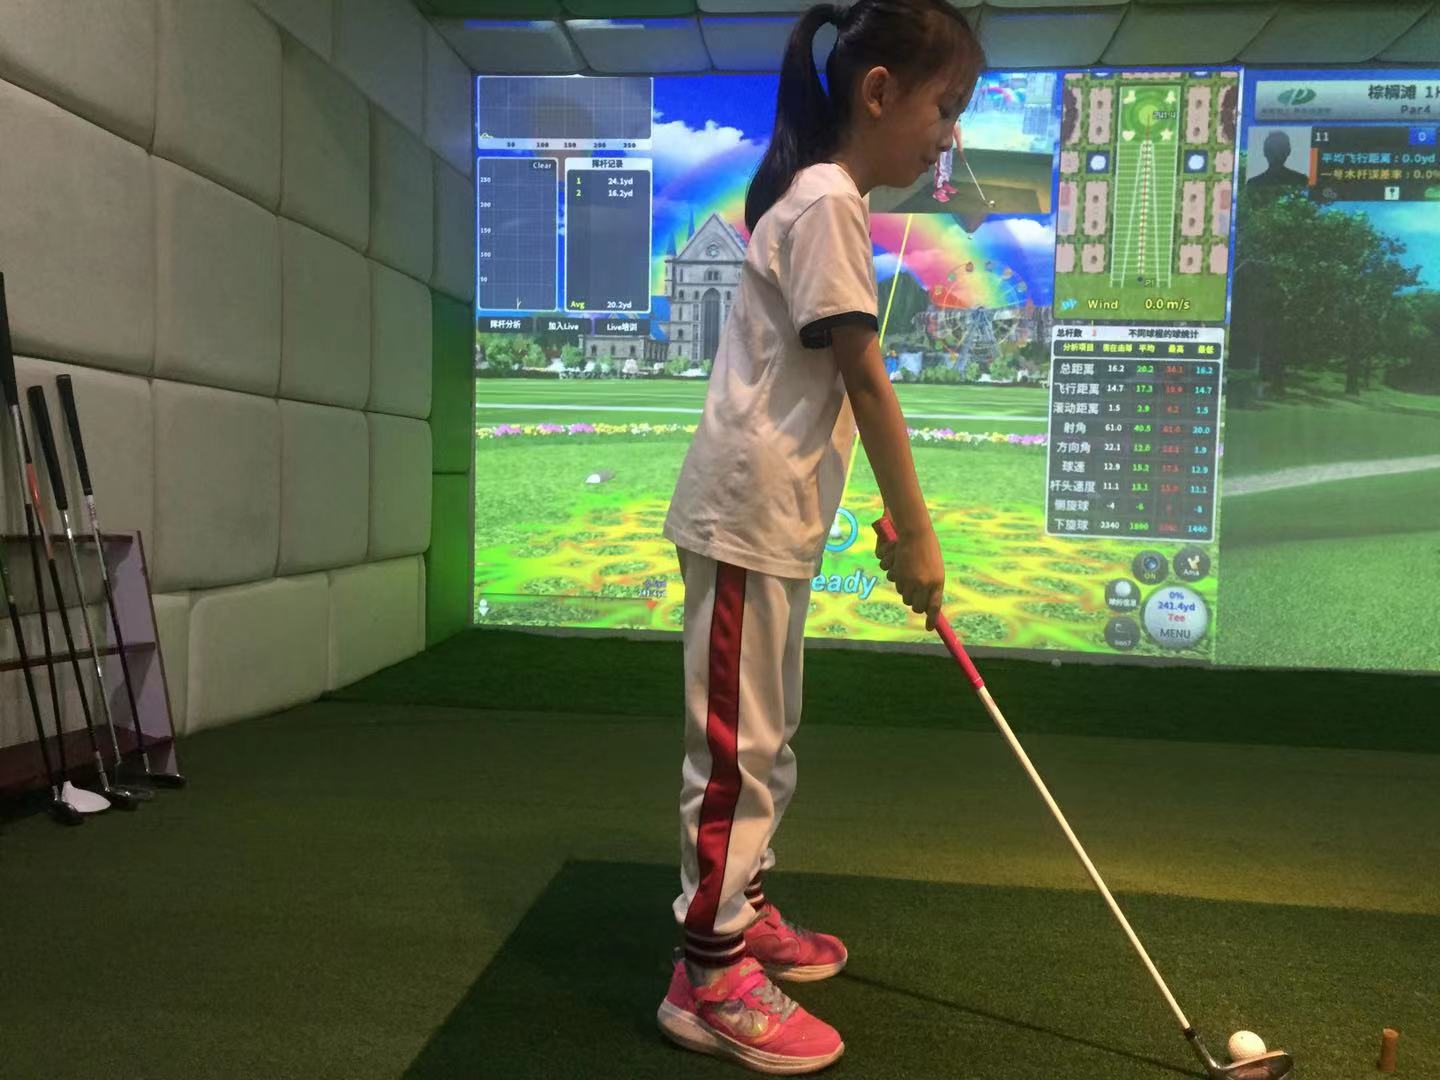 青少年儿童高尔夫练习场室内模拟高尔夫校园高尔夫设备MagicGolf